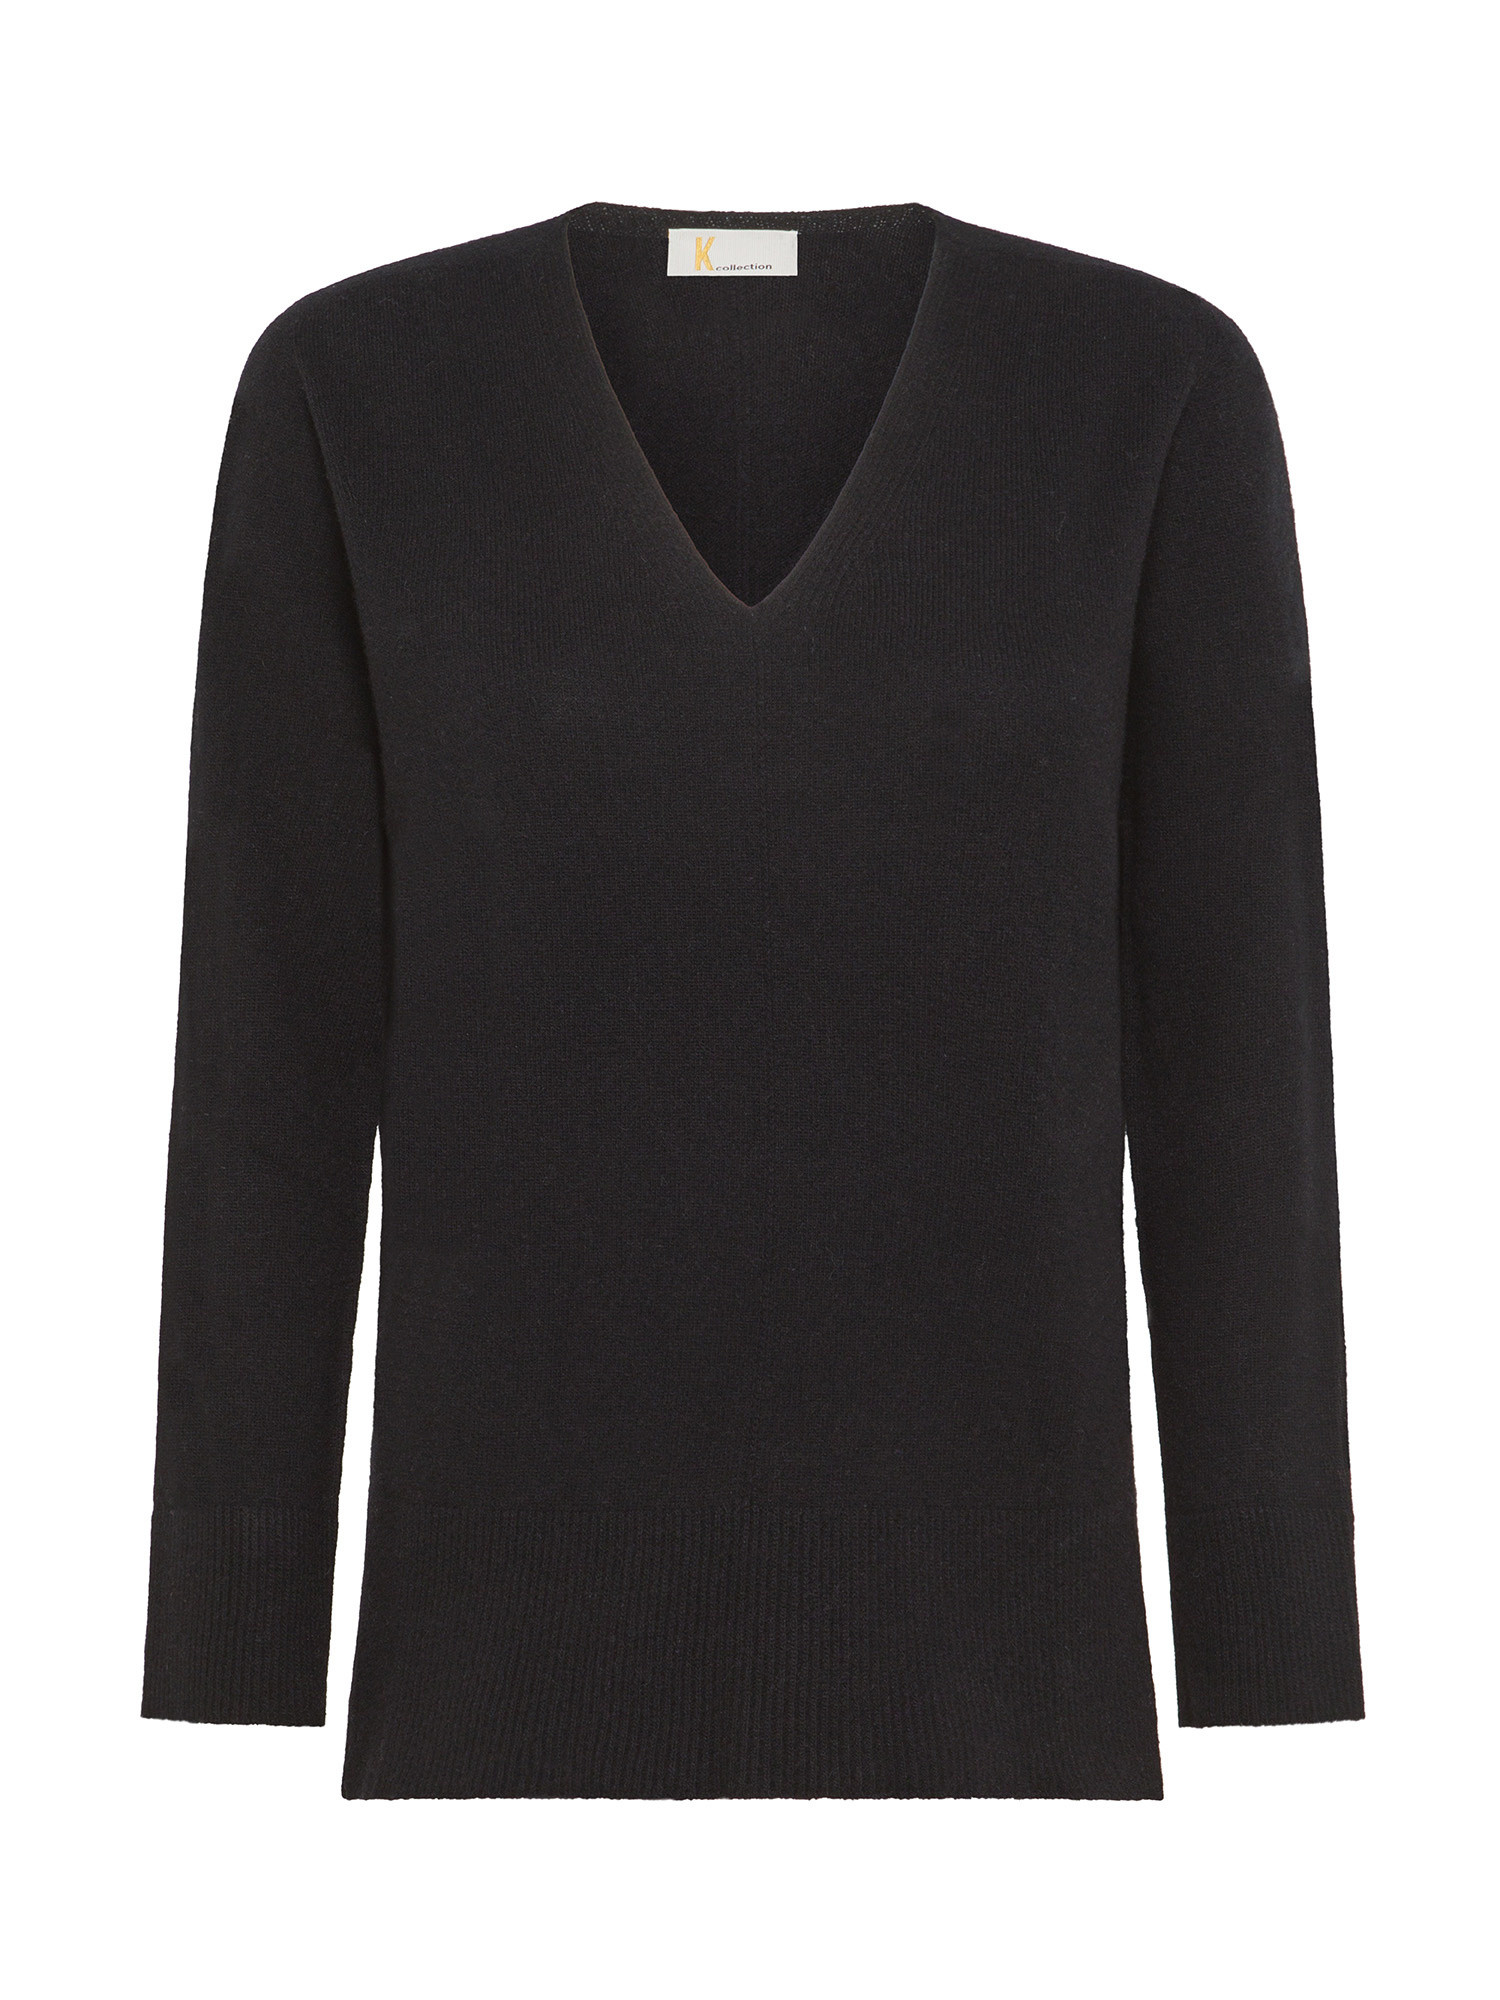 K Collection - V-neck sweater, Black, large image number 0